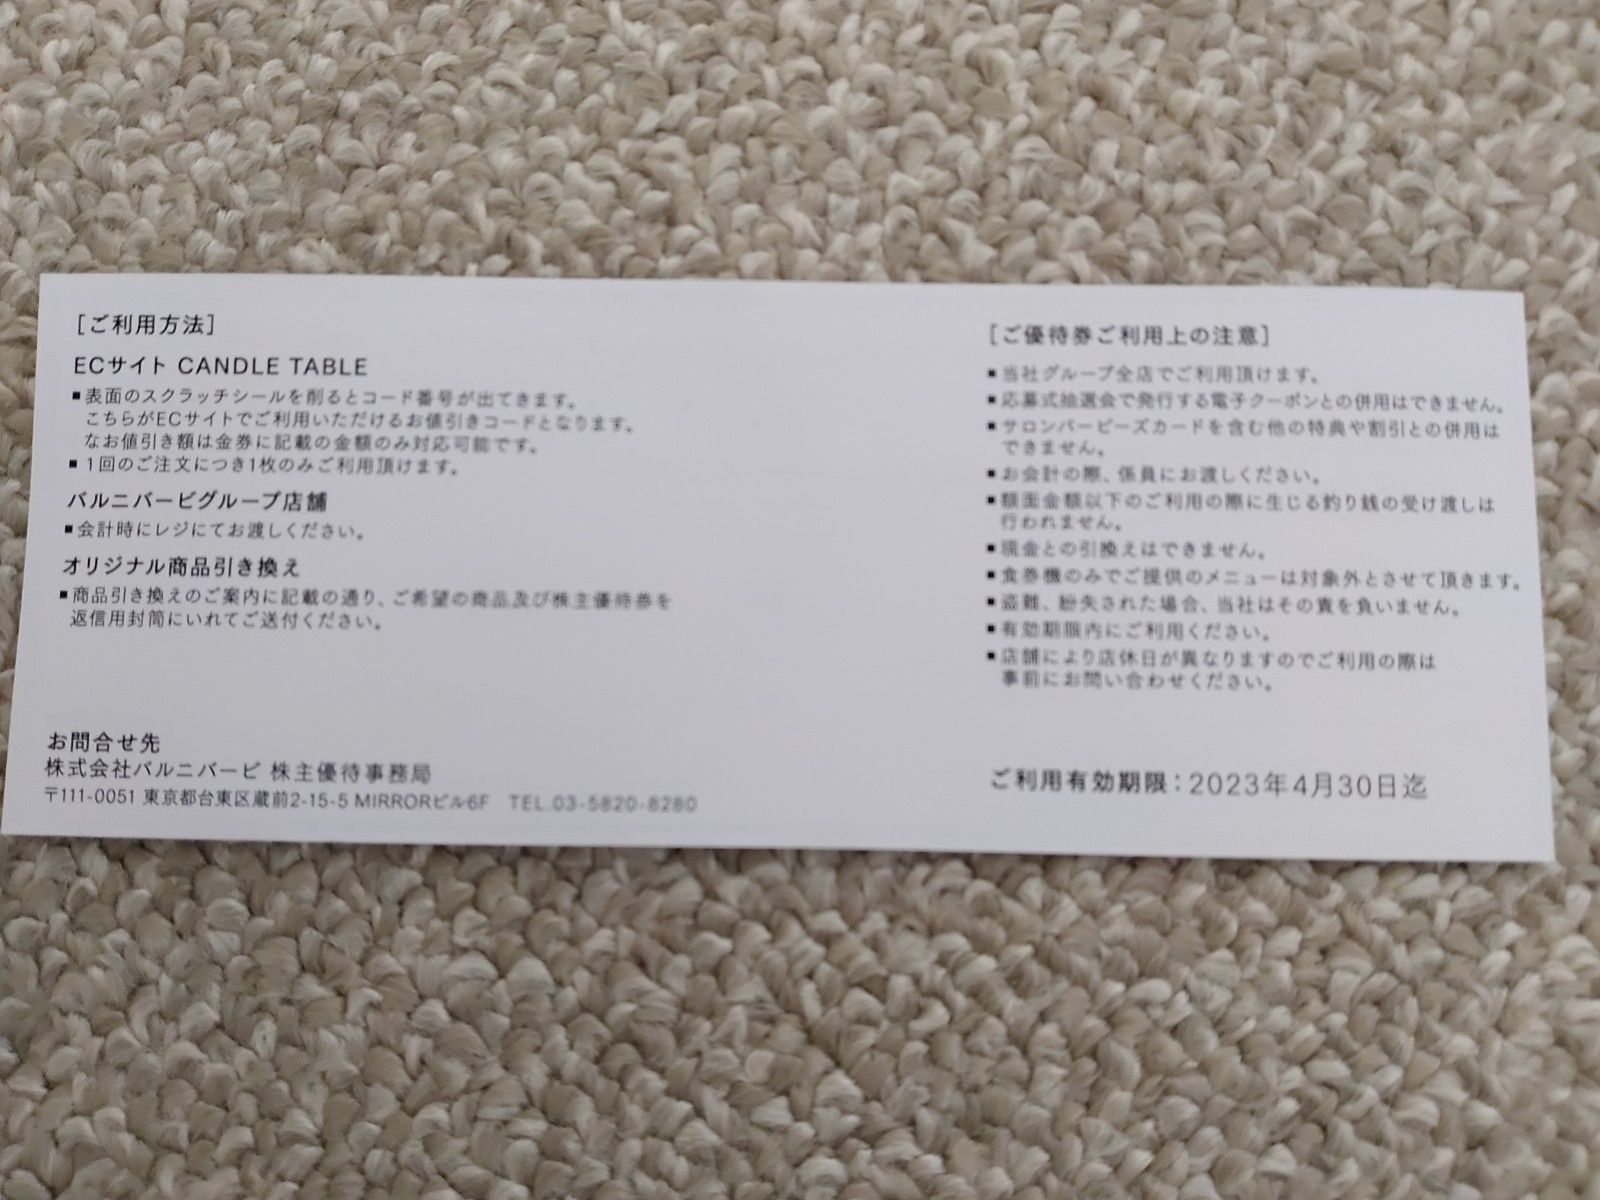 新入荷 4000円分 バルニバービ 株主優待券 champs21.com